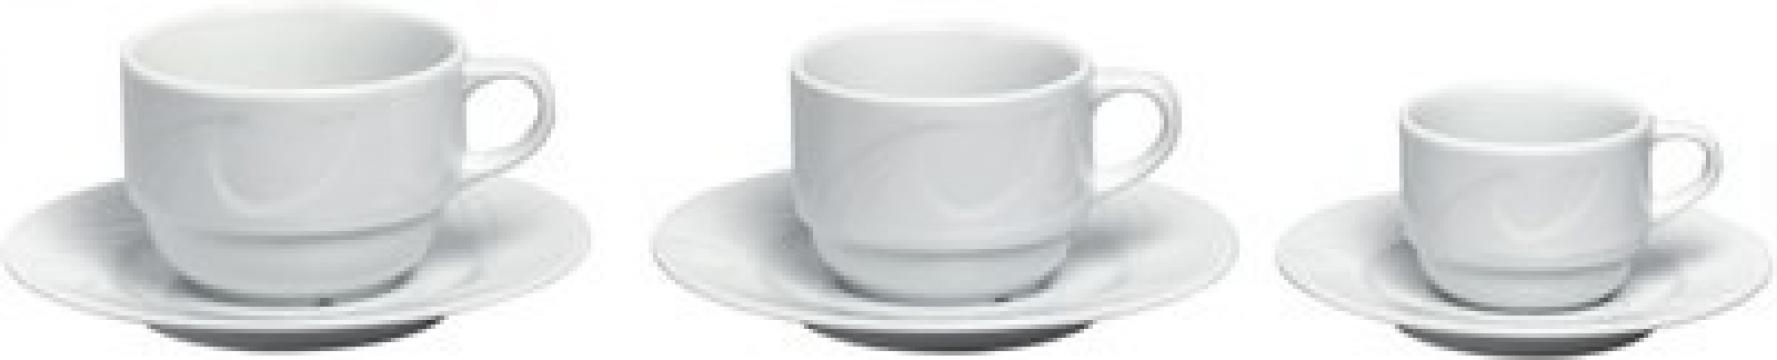 Farfurie cesti cafea/cappuccino (D) 149 mm, portelan